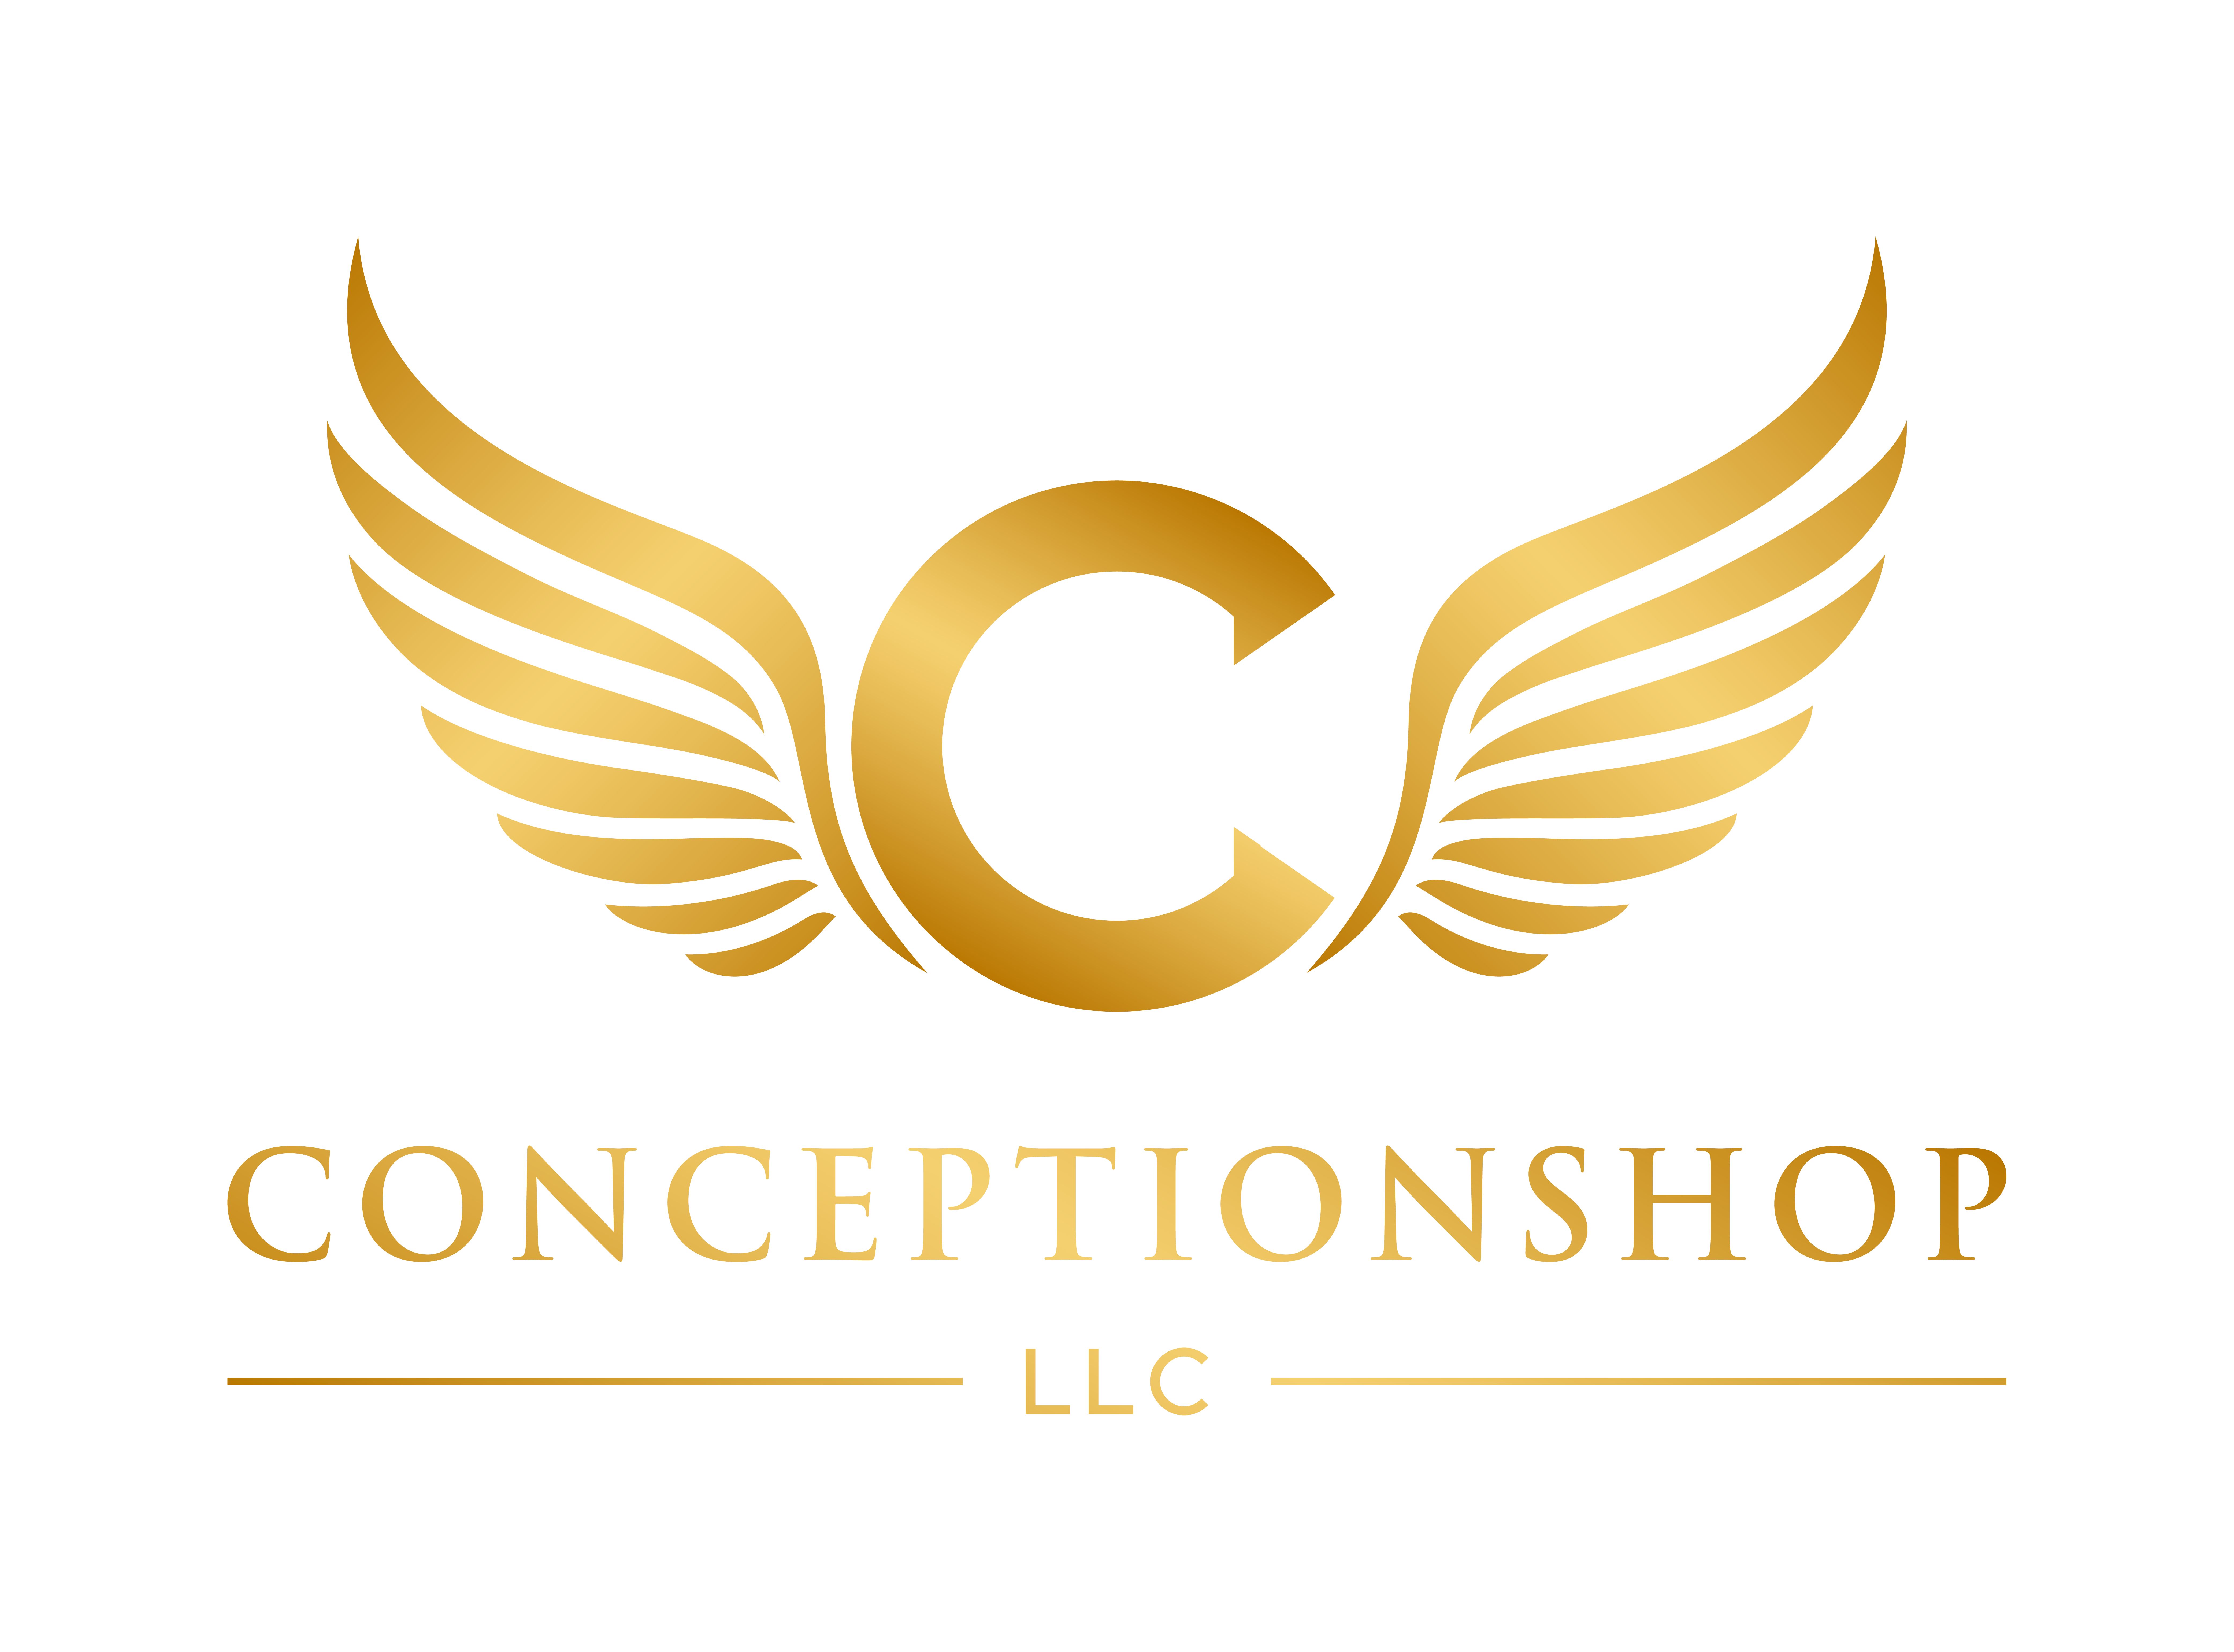 Conception Shop LLC